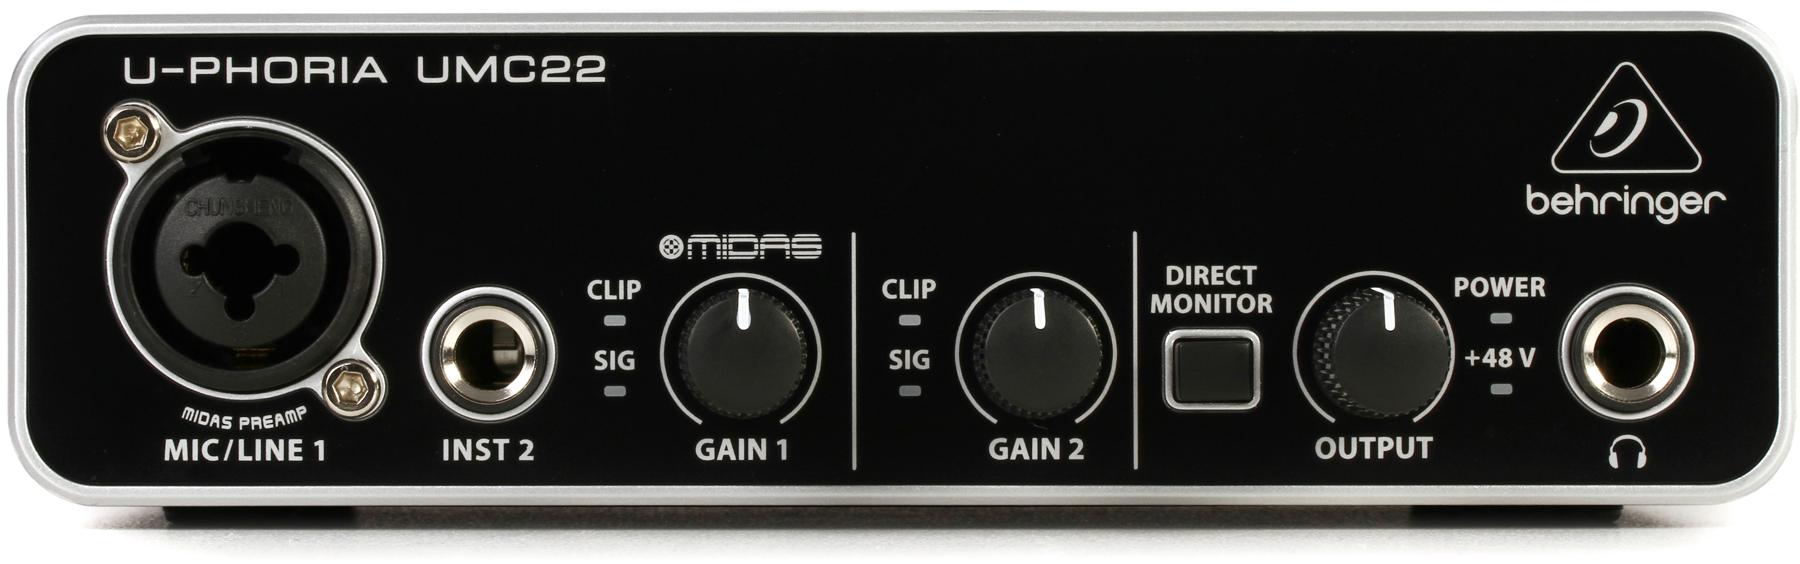 Behringer U-Phoria UMC22 USB Audio Interface main image